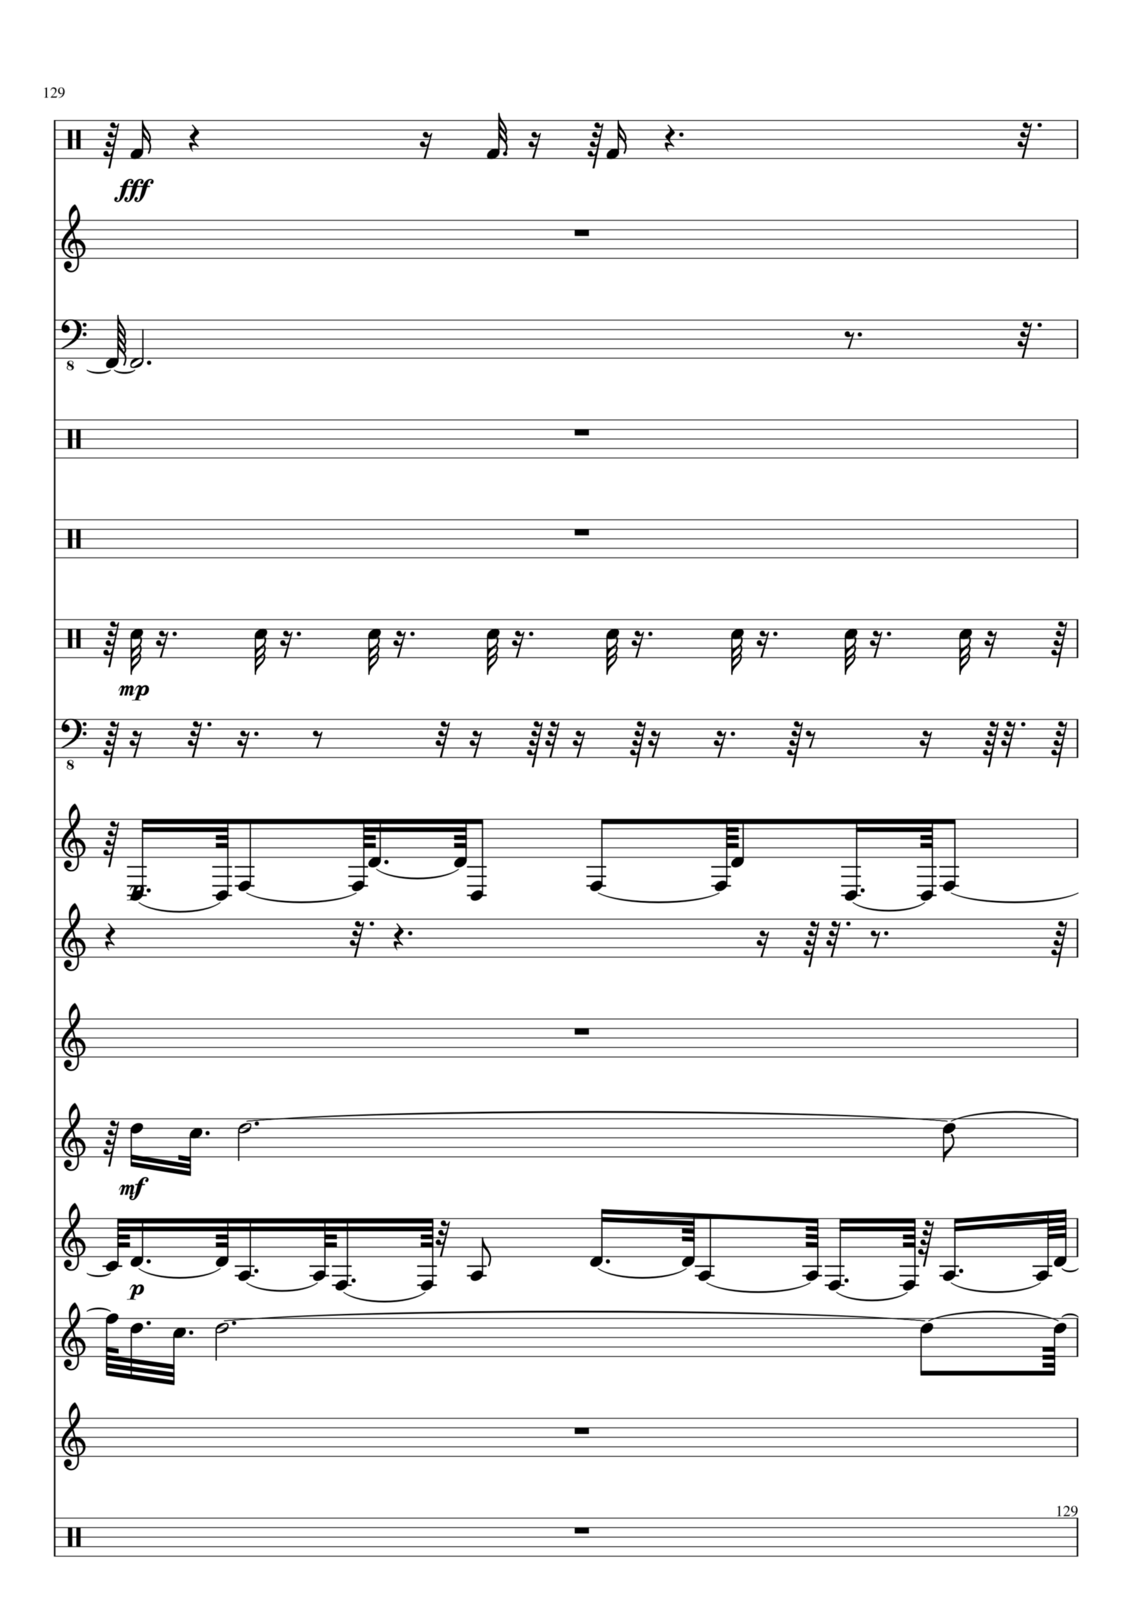 Utro polinyi slide, Image 129